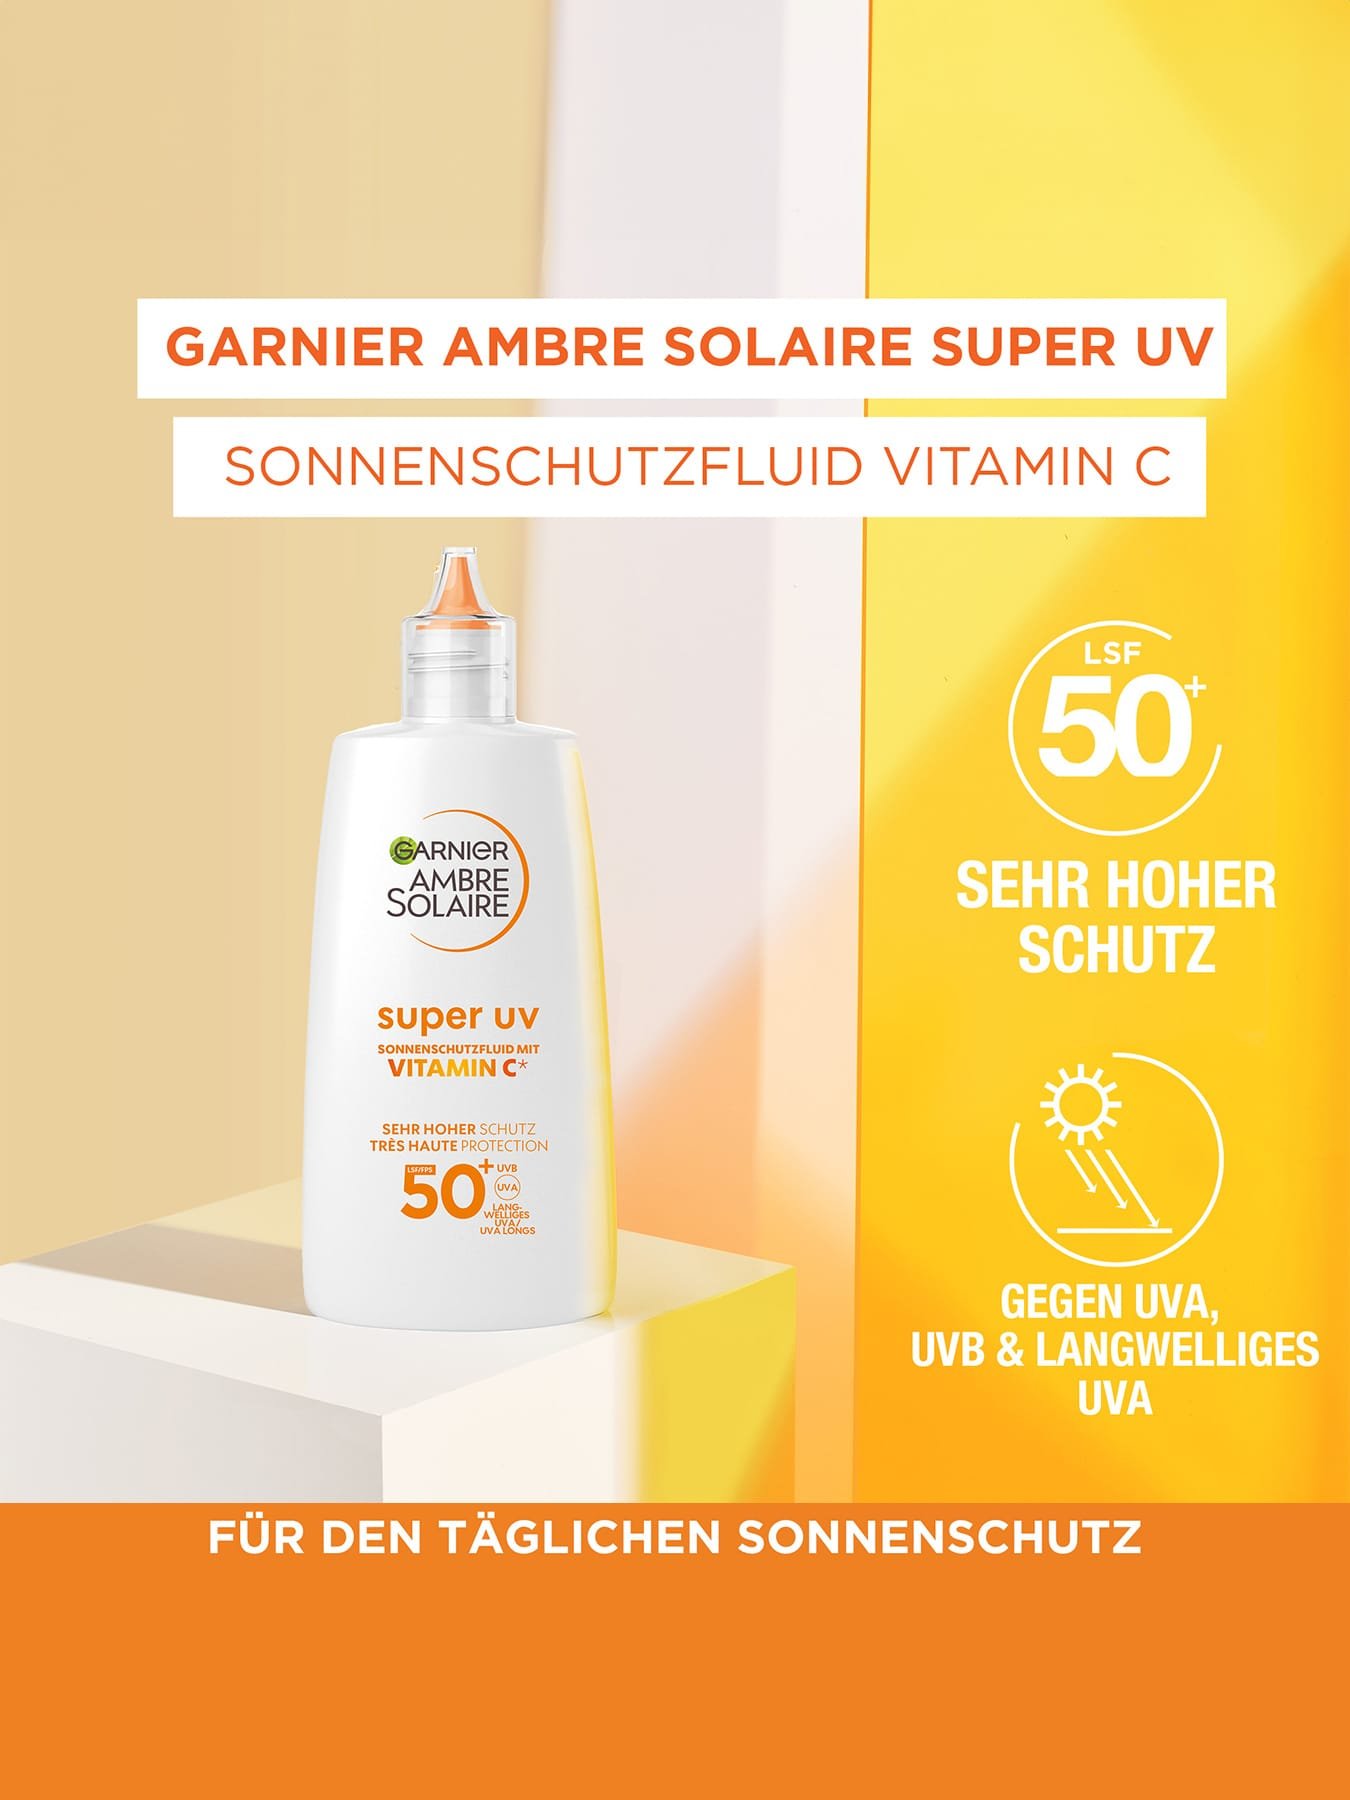 Super UV Sonnenschutzfluid mit Vitamin C LSF 50+ - Produktabbildung mit zwei Produktvorteilen daneben gelistet